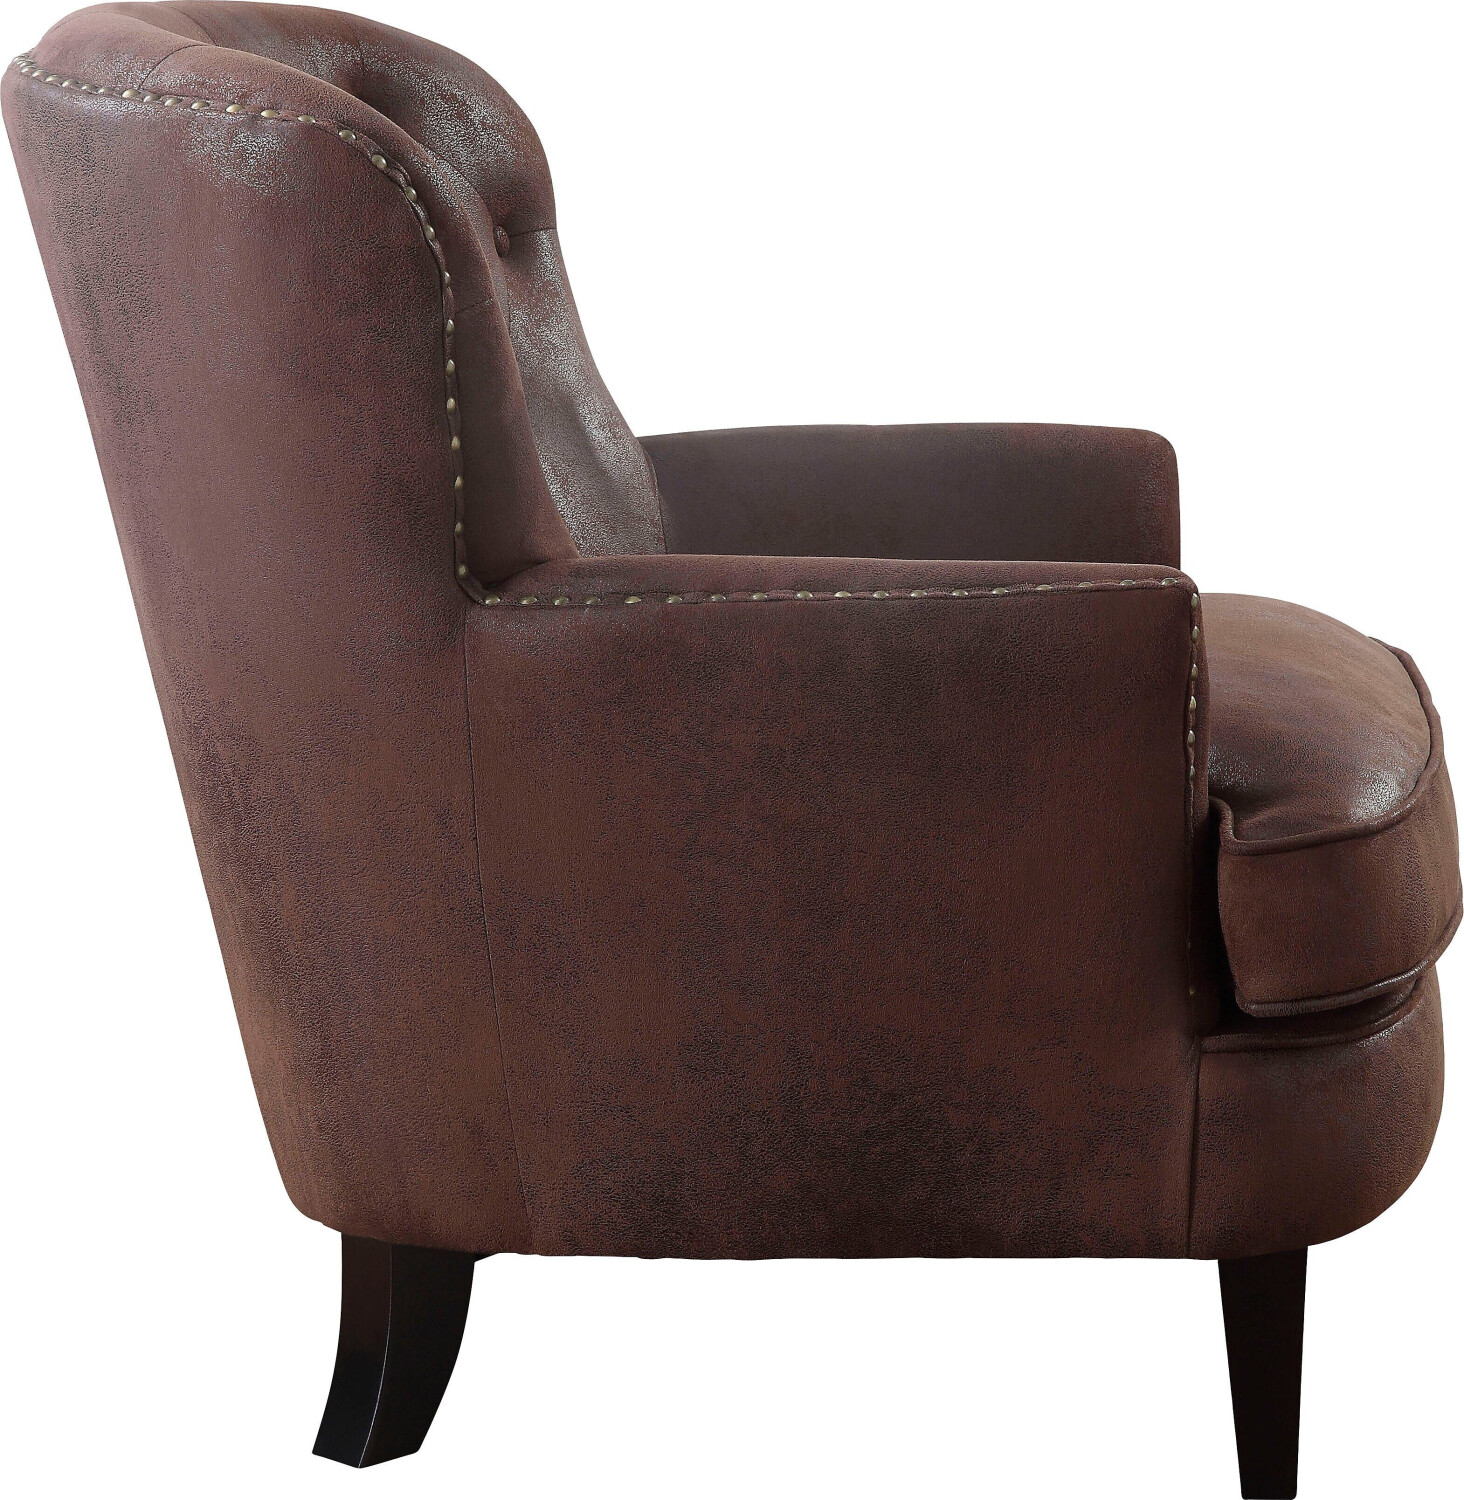 Atlantic vintage 329,99 | Sessel mit braun Preisvergleich ab Taschenfederkern Home Collection € bei